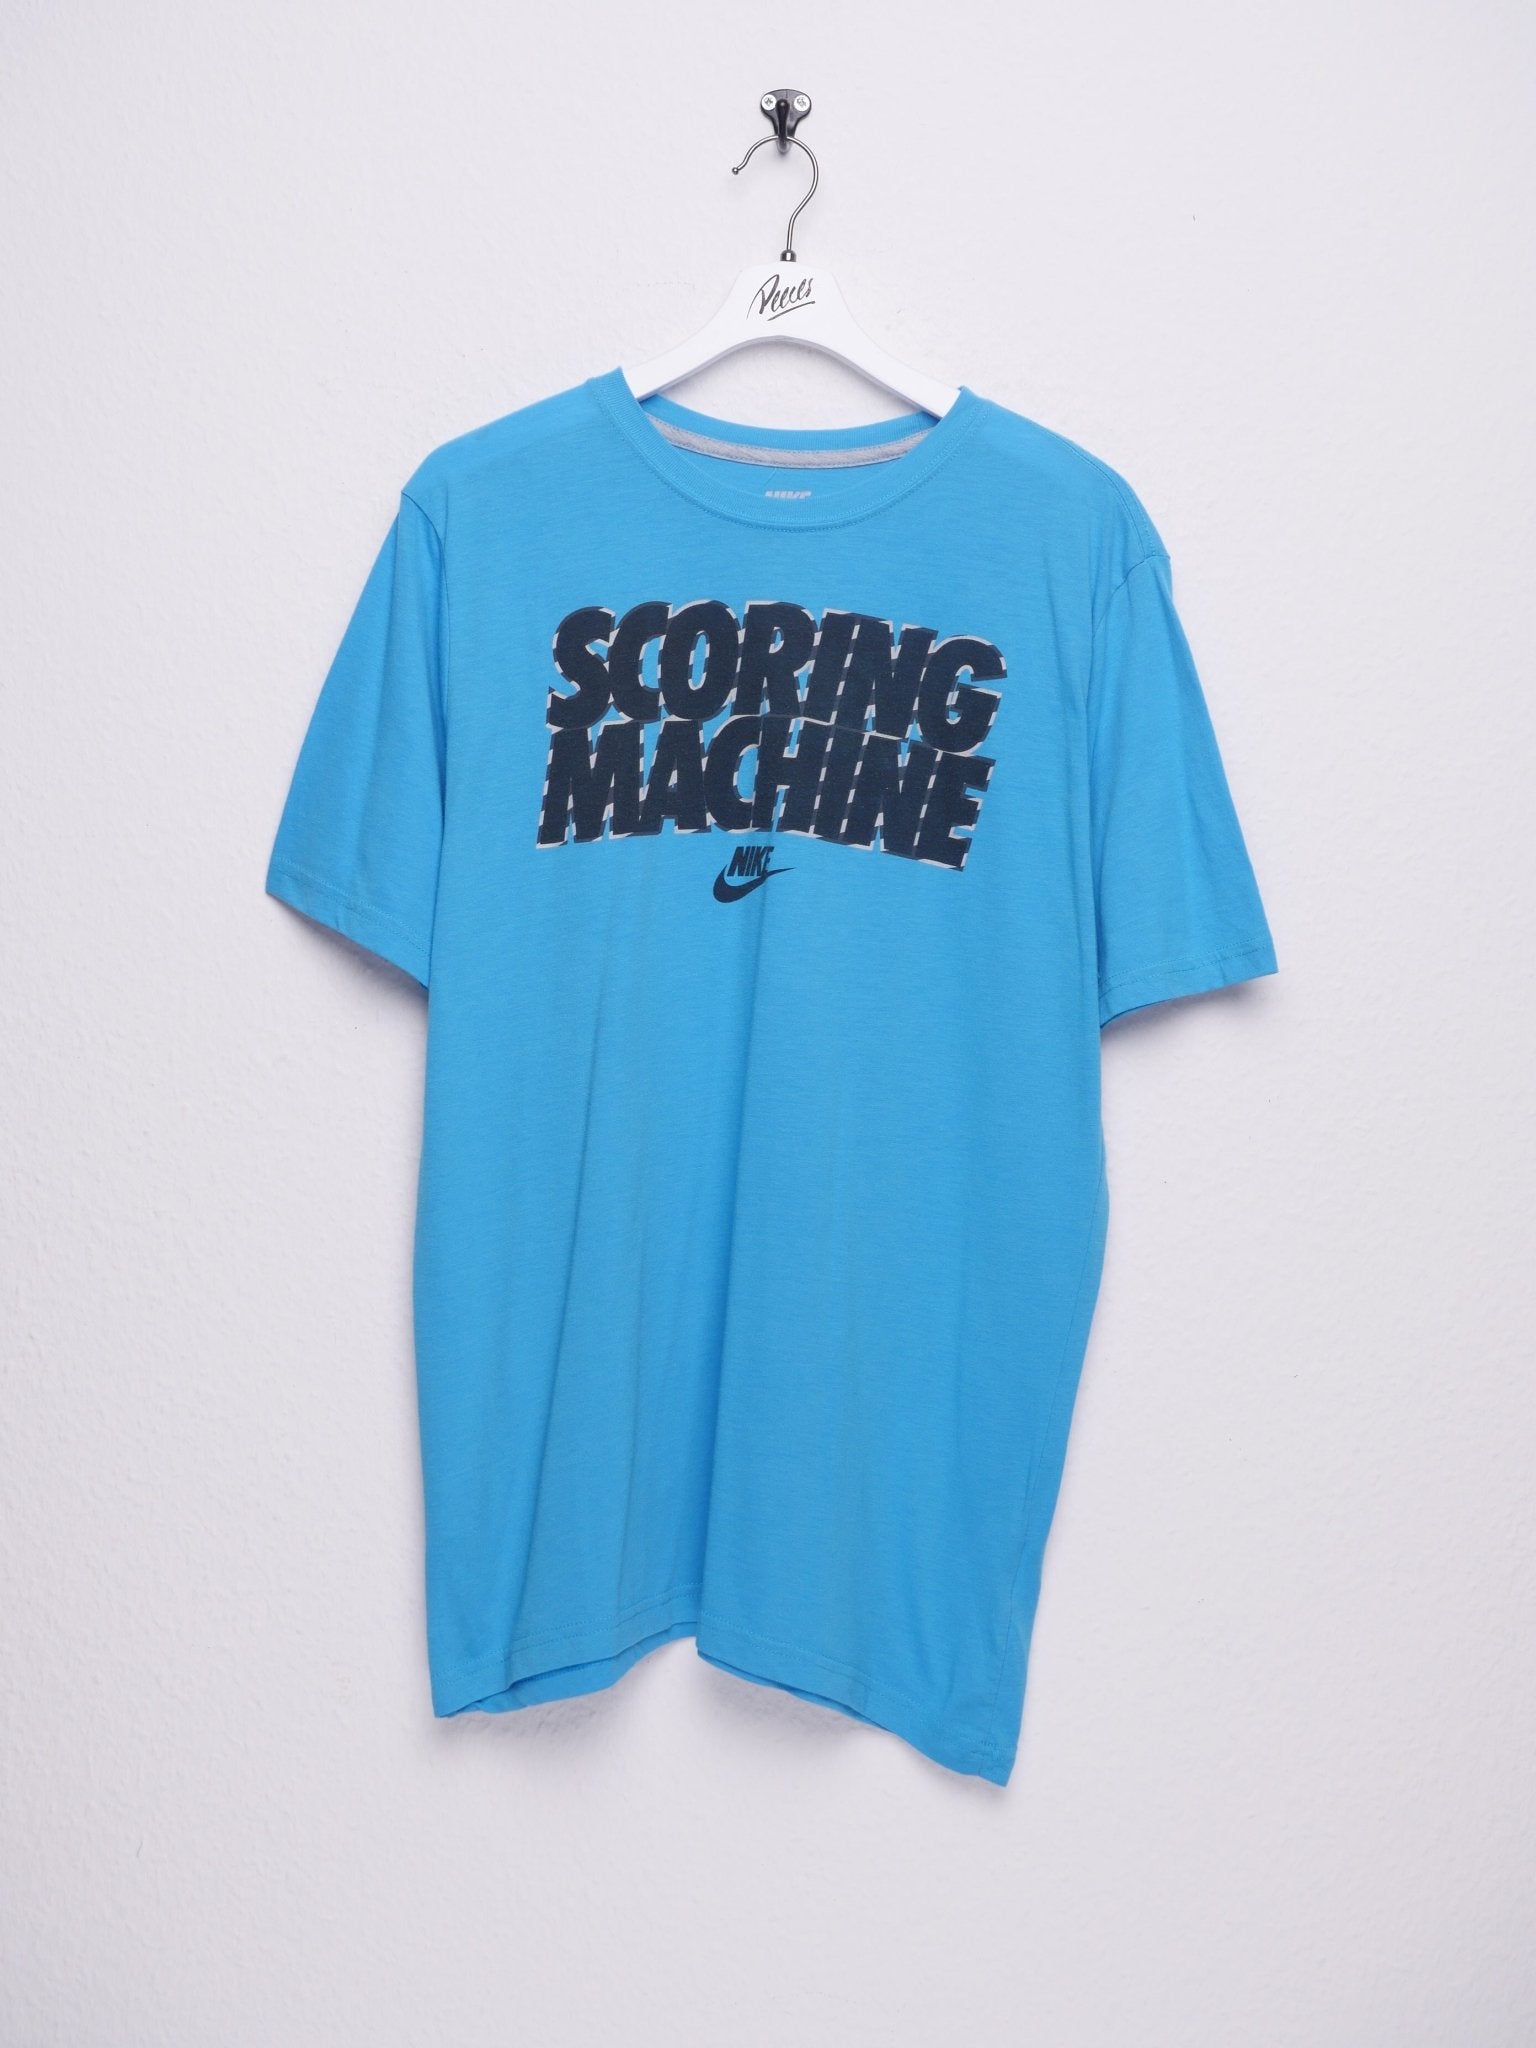 Nike Scoring Machine printed Logo thin Shirt - Peeces